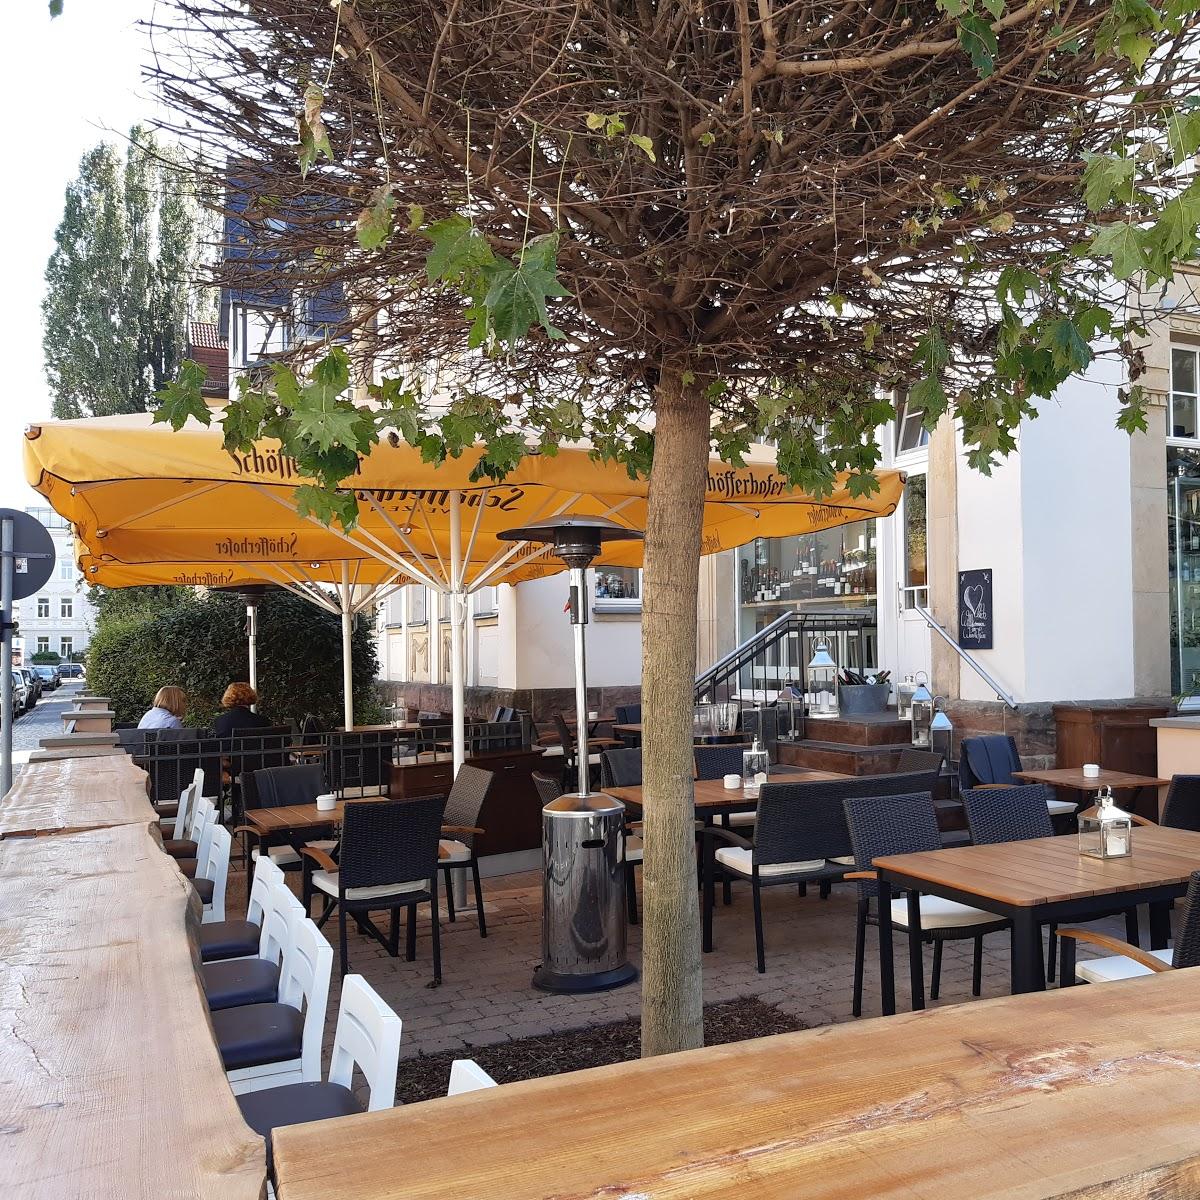 Restaurant "Wein & Fein" in Erfurt